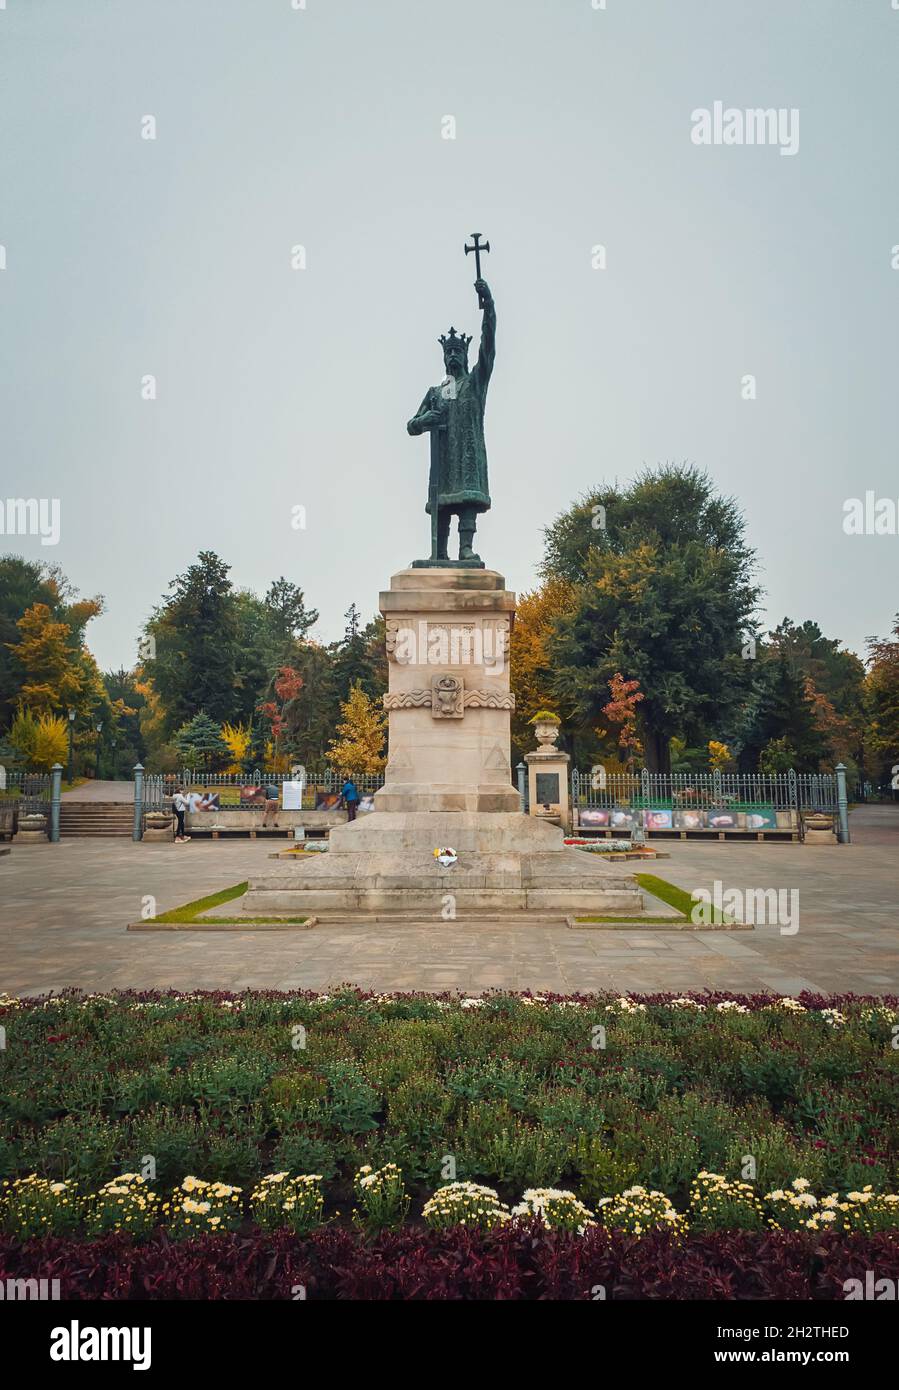 Stephen III le Grand monument (statue de Stefan cel Mare) devant le parc dans un jour pluvieux d'automne, ville de Chisinau, Moldavie Banque D'Images